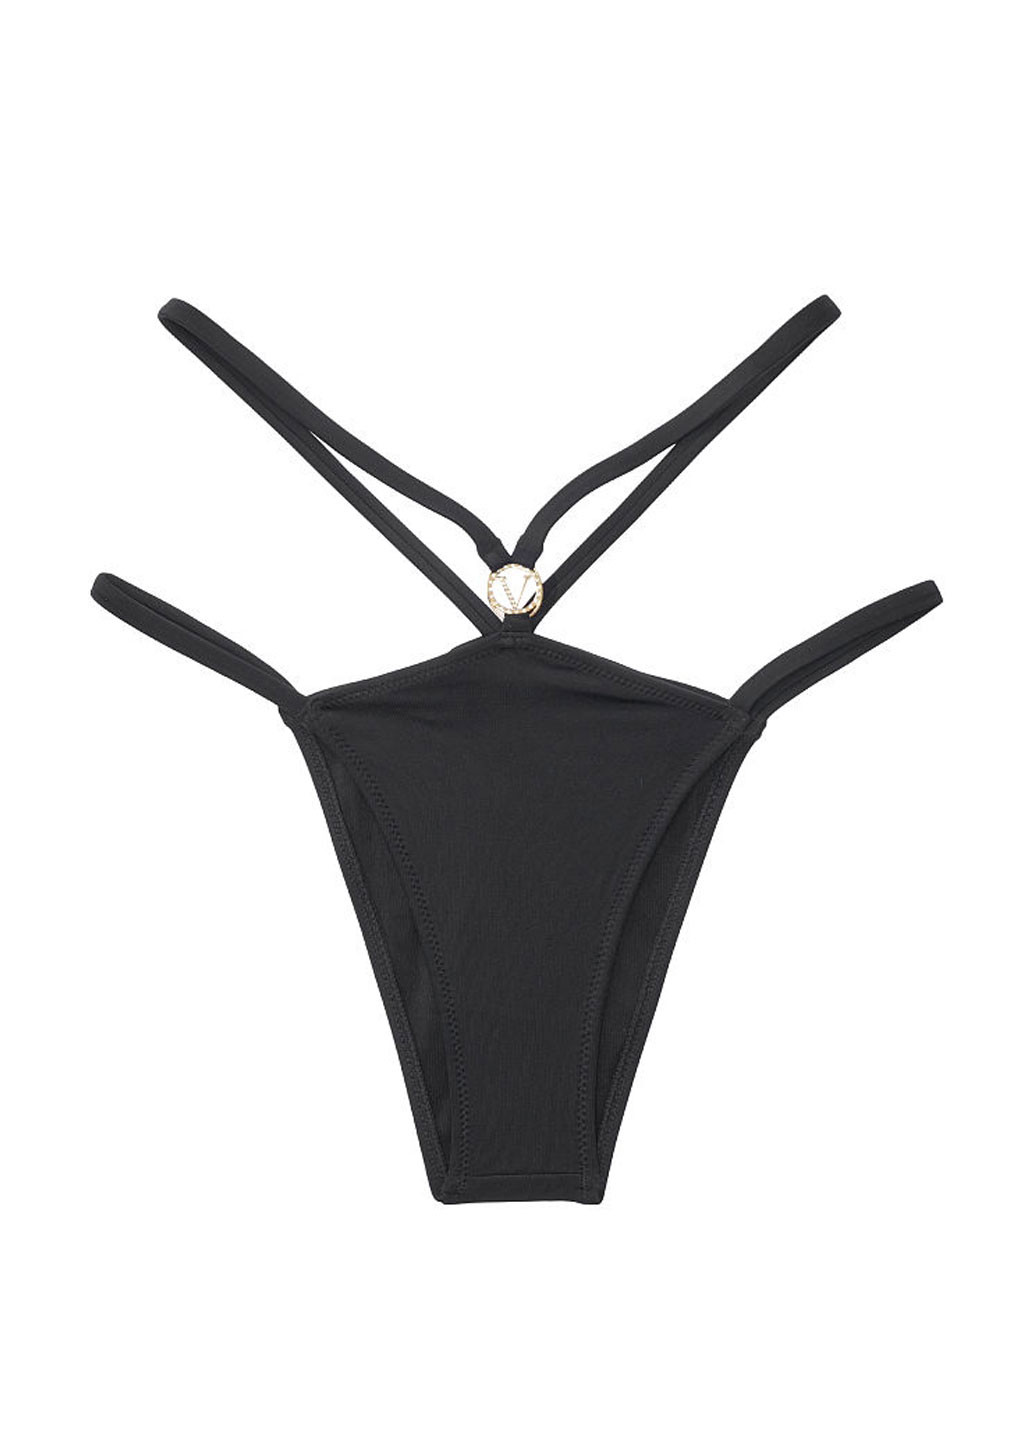 Чорний літній купальник (ліф, труси) бікіні, роздільний Victoria's Secret